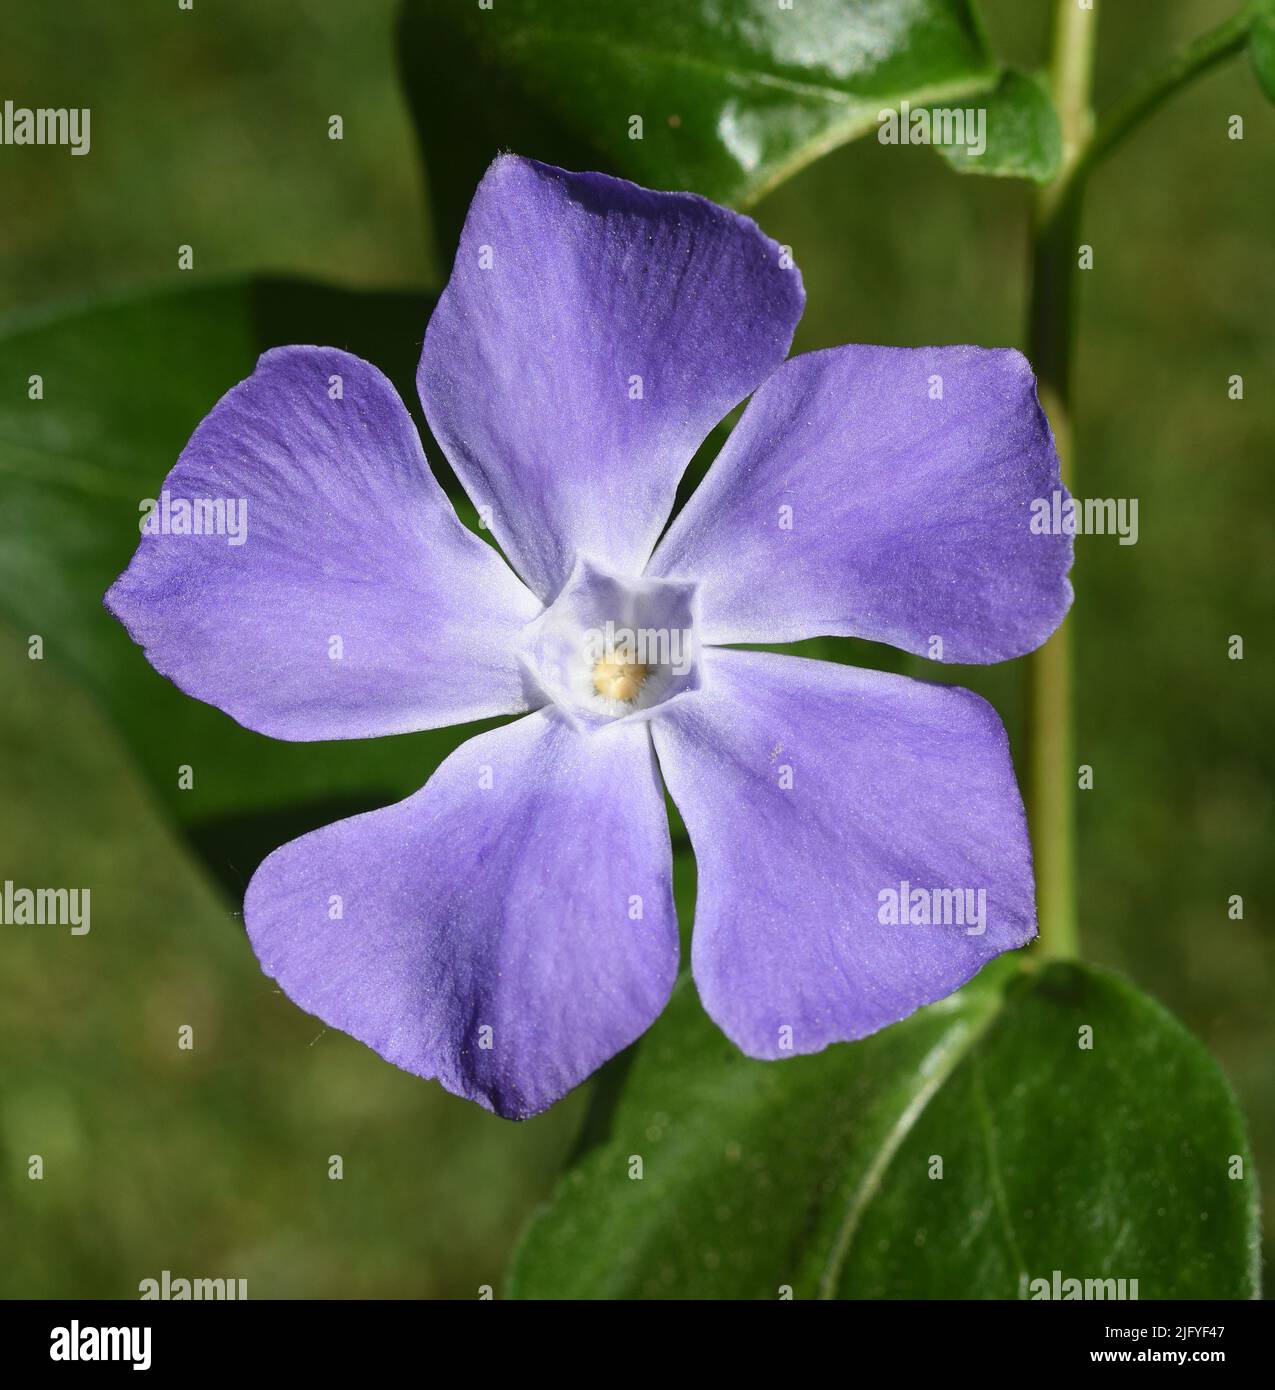 Immergruen, Vinca Major, ist eine wichtige Heilpflanze mit blauen Blueten und wird auch als Bodendecker verwendet. Periwinkle, Vinca Major, es un imp Foto de stock